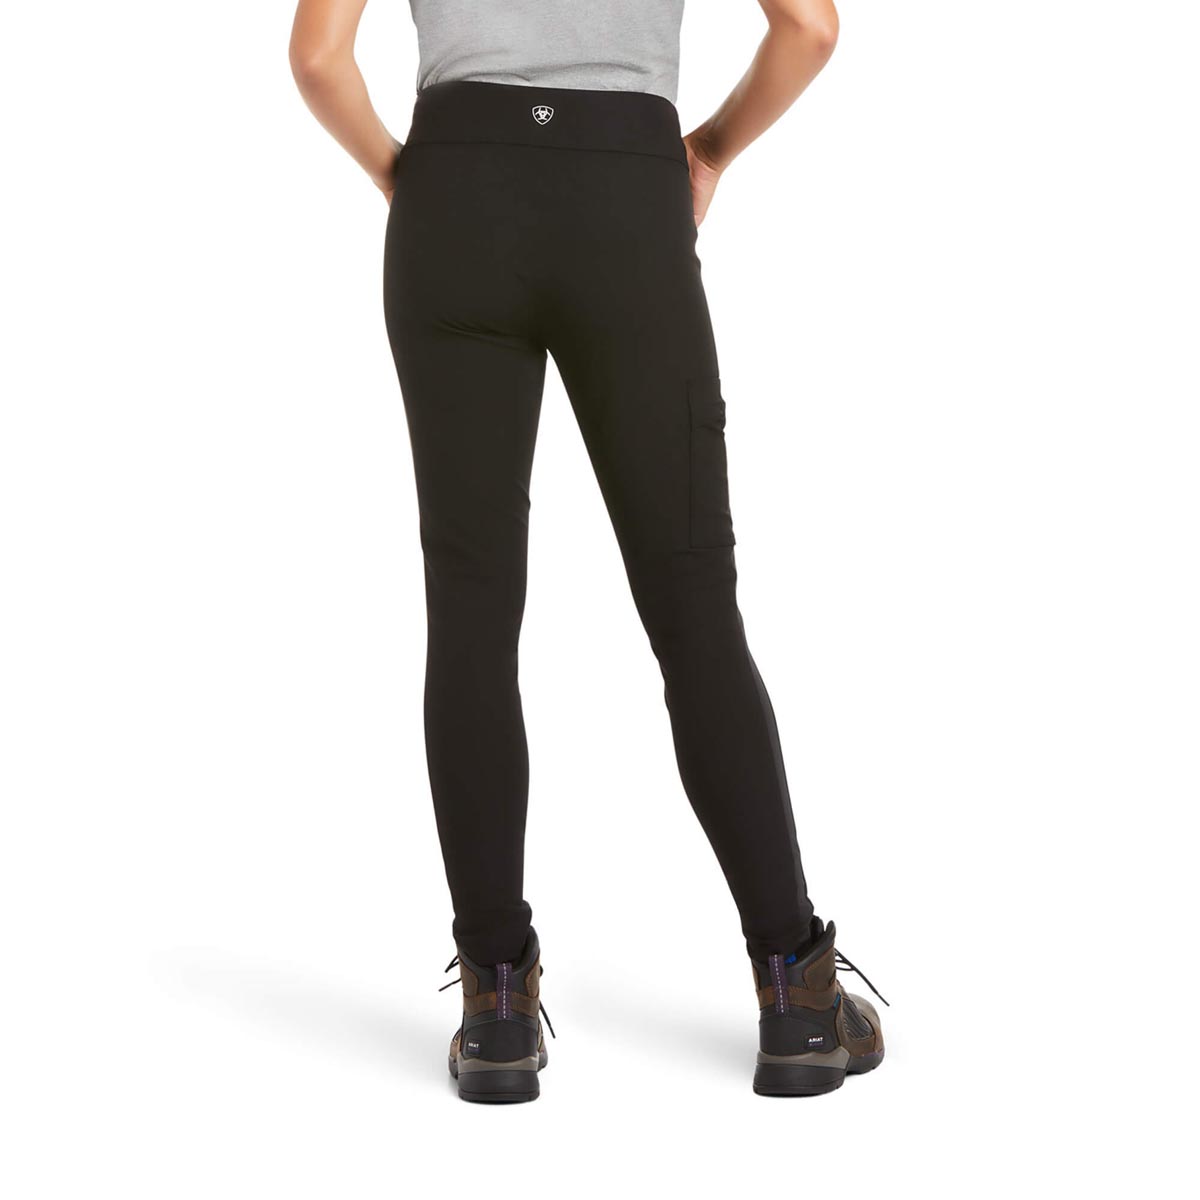 Ariat Women's Rebar DuraStrech Utility Legging - Black